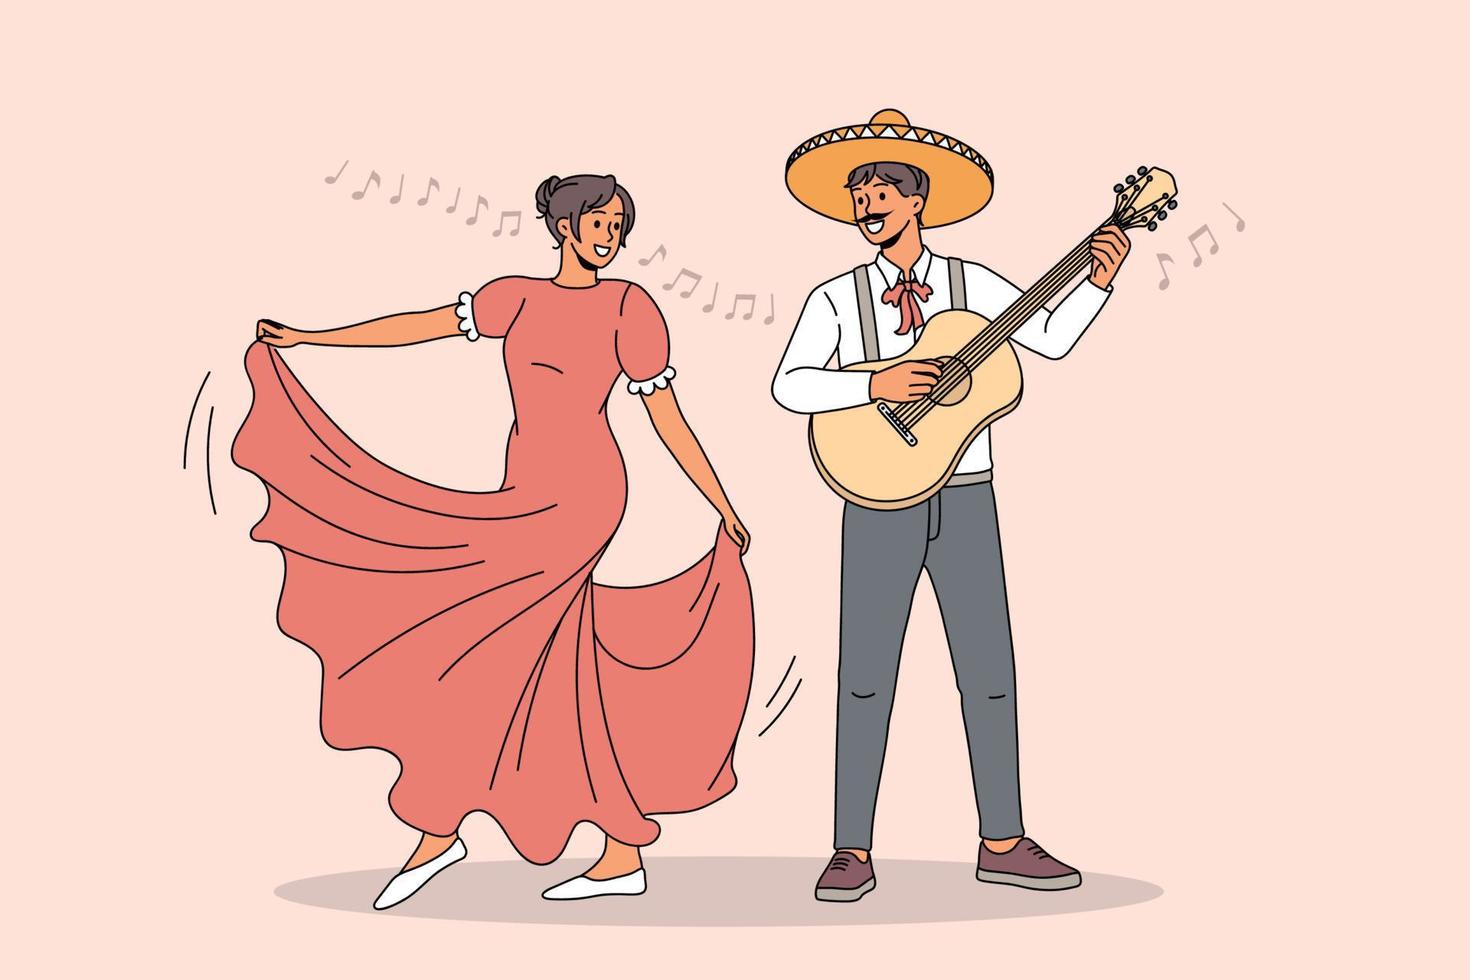 mexikaner und frau in traditioneller kleidung tanzen zu gitarrenmusik. Fröhliche Latino-Tänzer haben Spaß und genießen kulturelle Volksfeste. fiesta, musikfestivalkonzept. flache vektorillustration. vektor